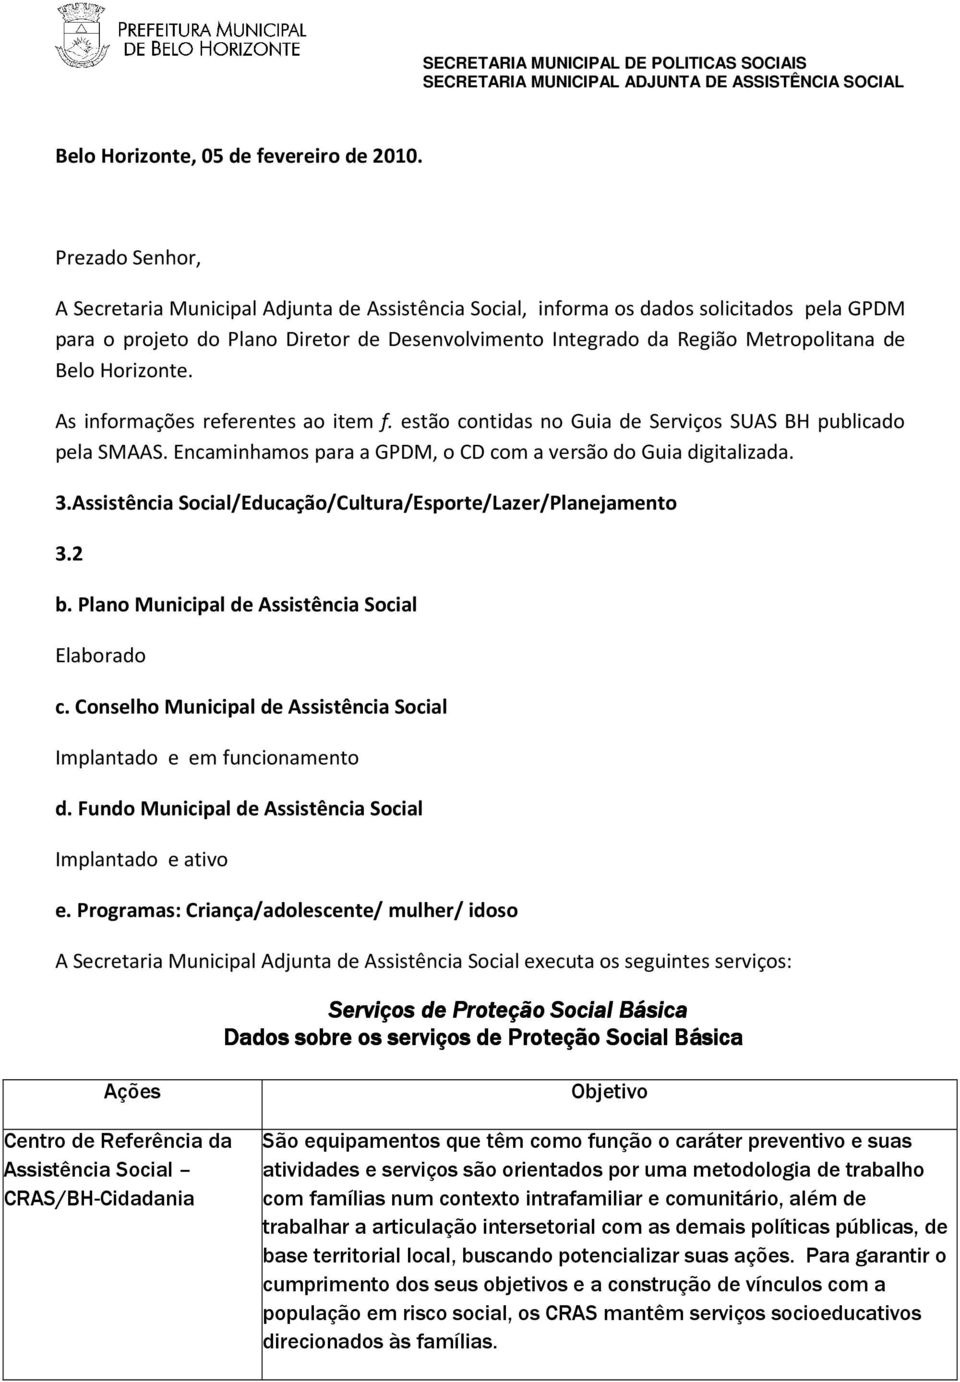 Belo Horizonte. As informações referentes ao item f. estão contidas no Guia de Serviços SUAS BH publicado pela SMAAS. Encaminhamos para a GPDM, o CD com a versão do Guia digitalizada. 3.